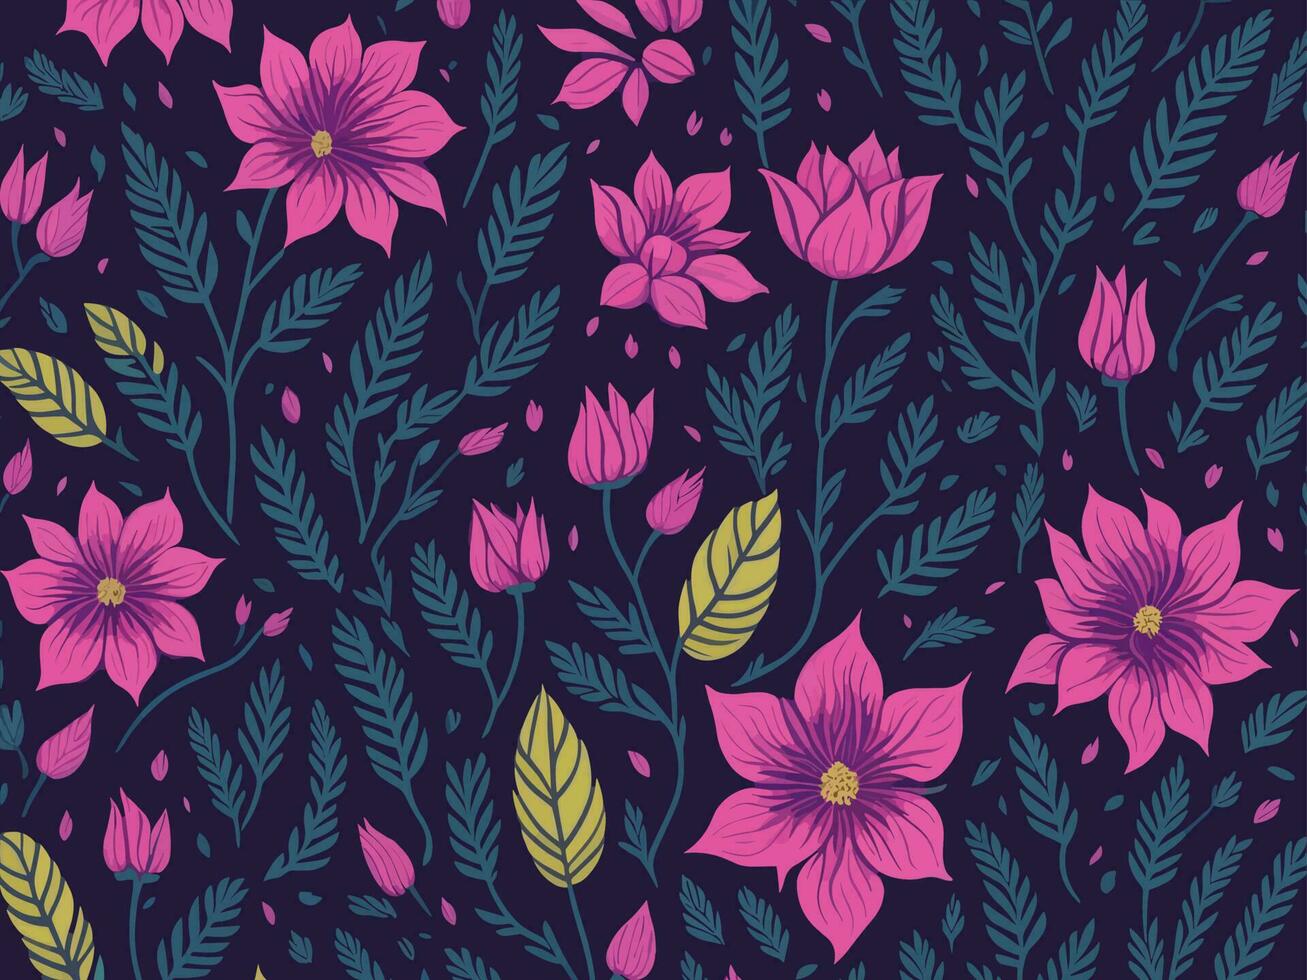 bloem patroon ontwerp vector illustratie. mooi elegant bloemen patroon kunst voor afdrukken, behang, decoratie.